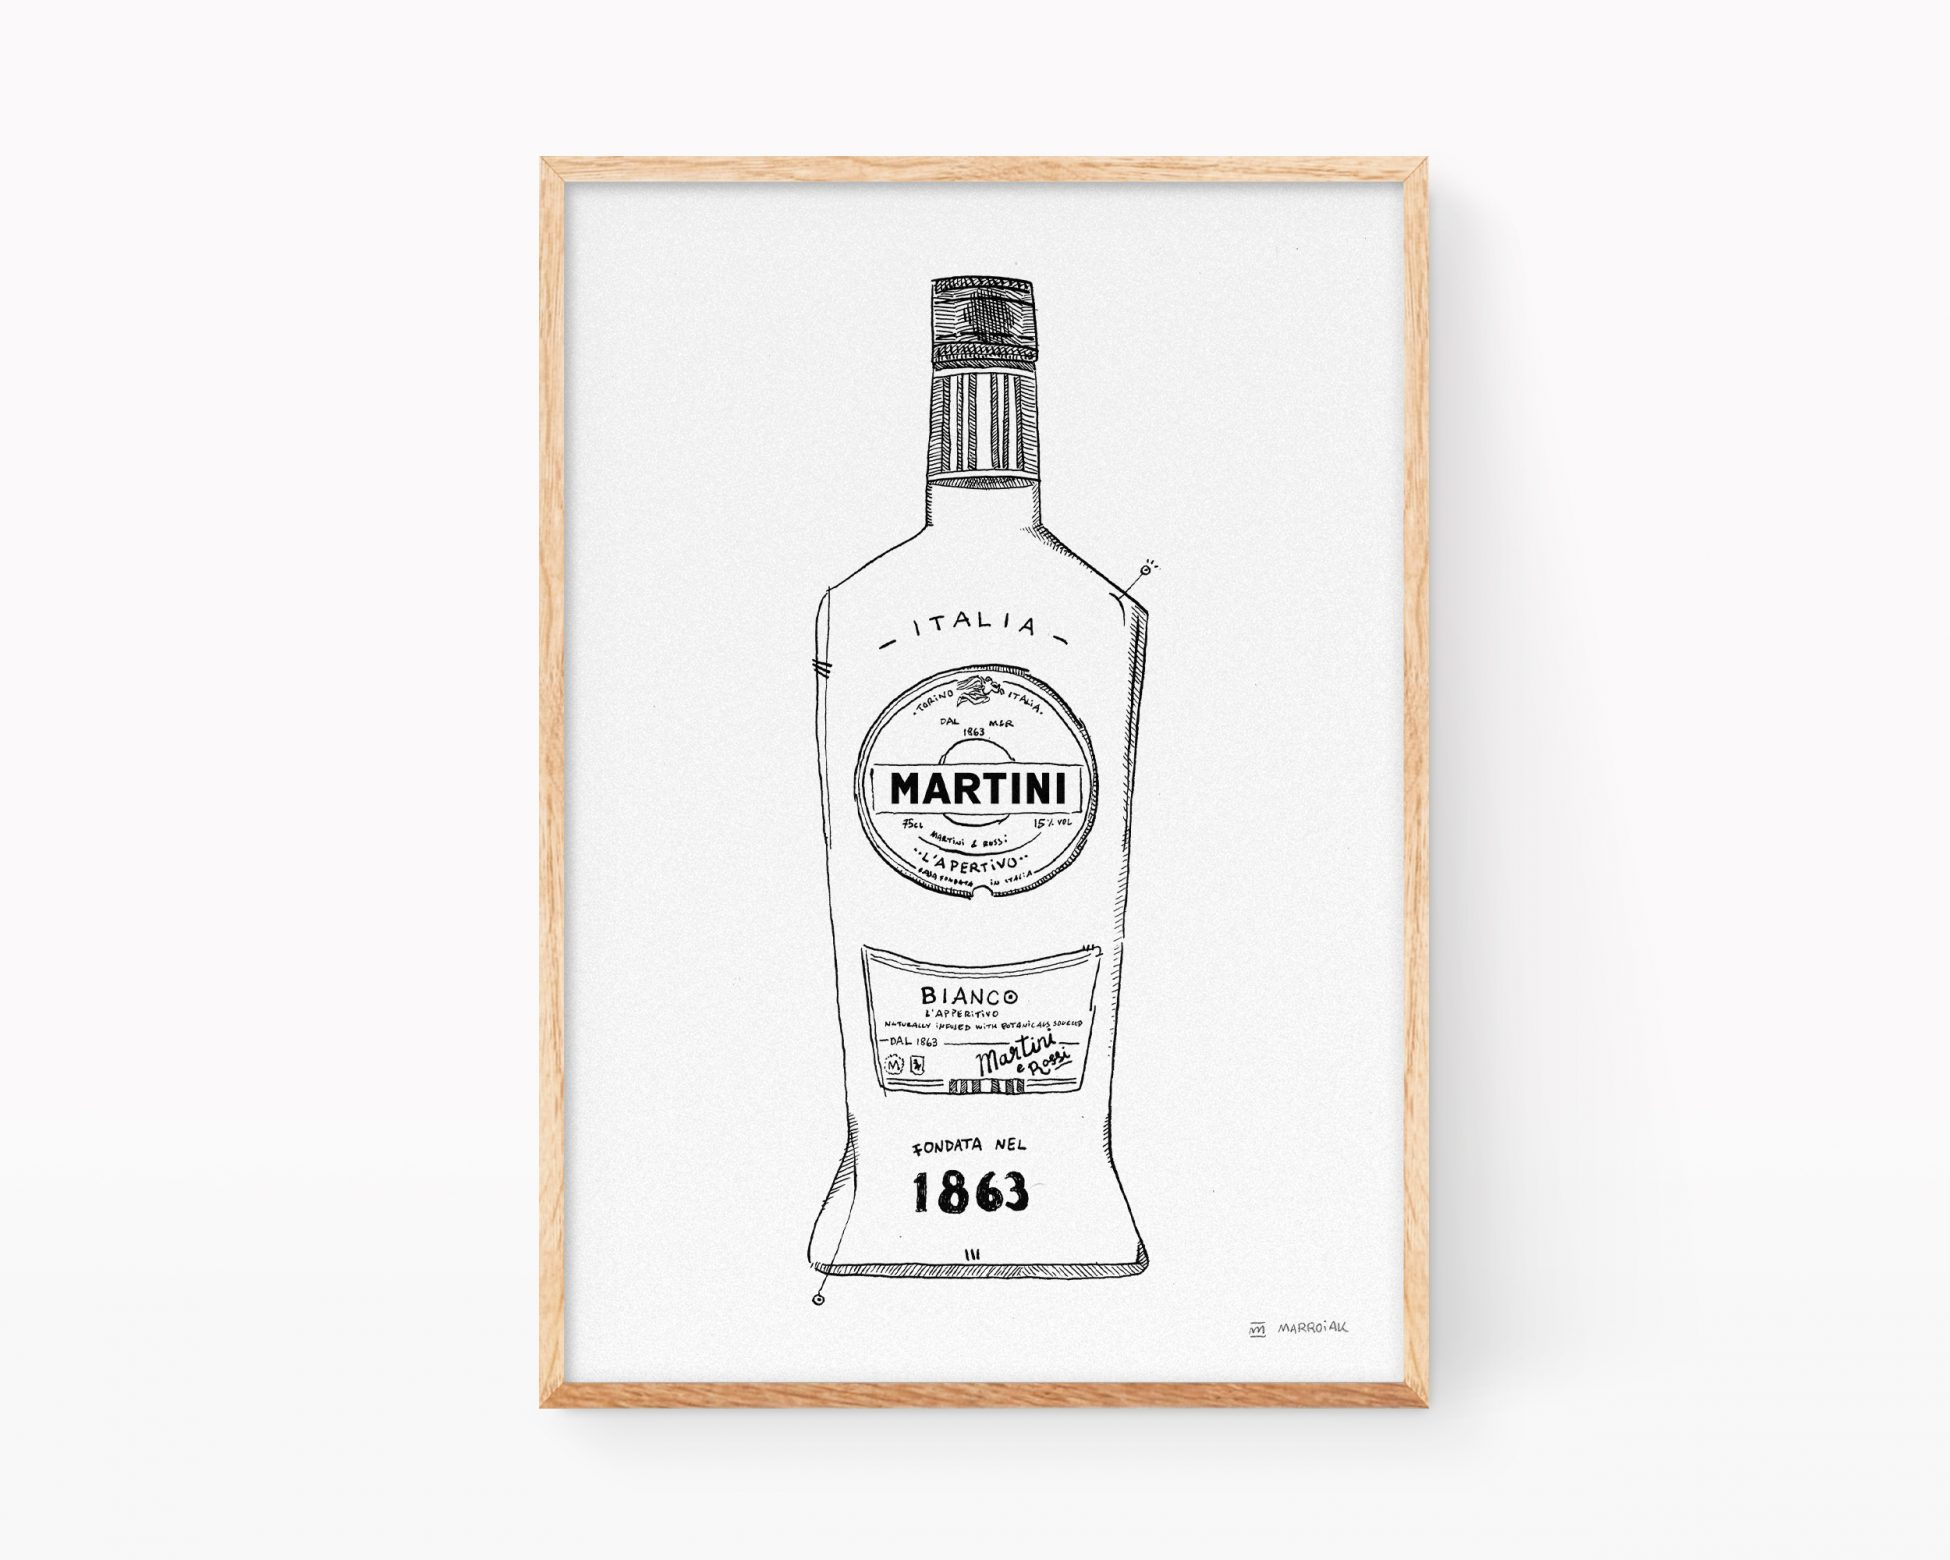 Cuadro botella Martini. Ilustración en blanco y negro para decoración de cocinas y pubs. Dibujo a tinta.